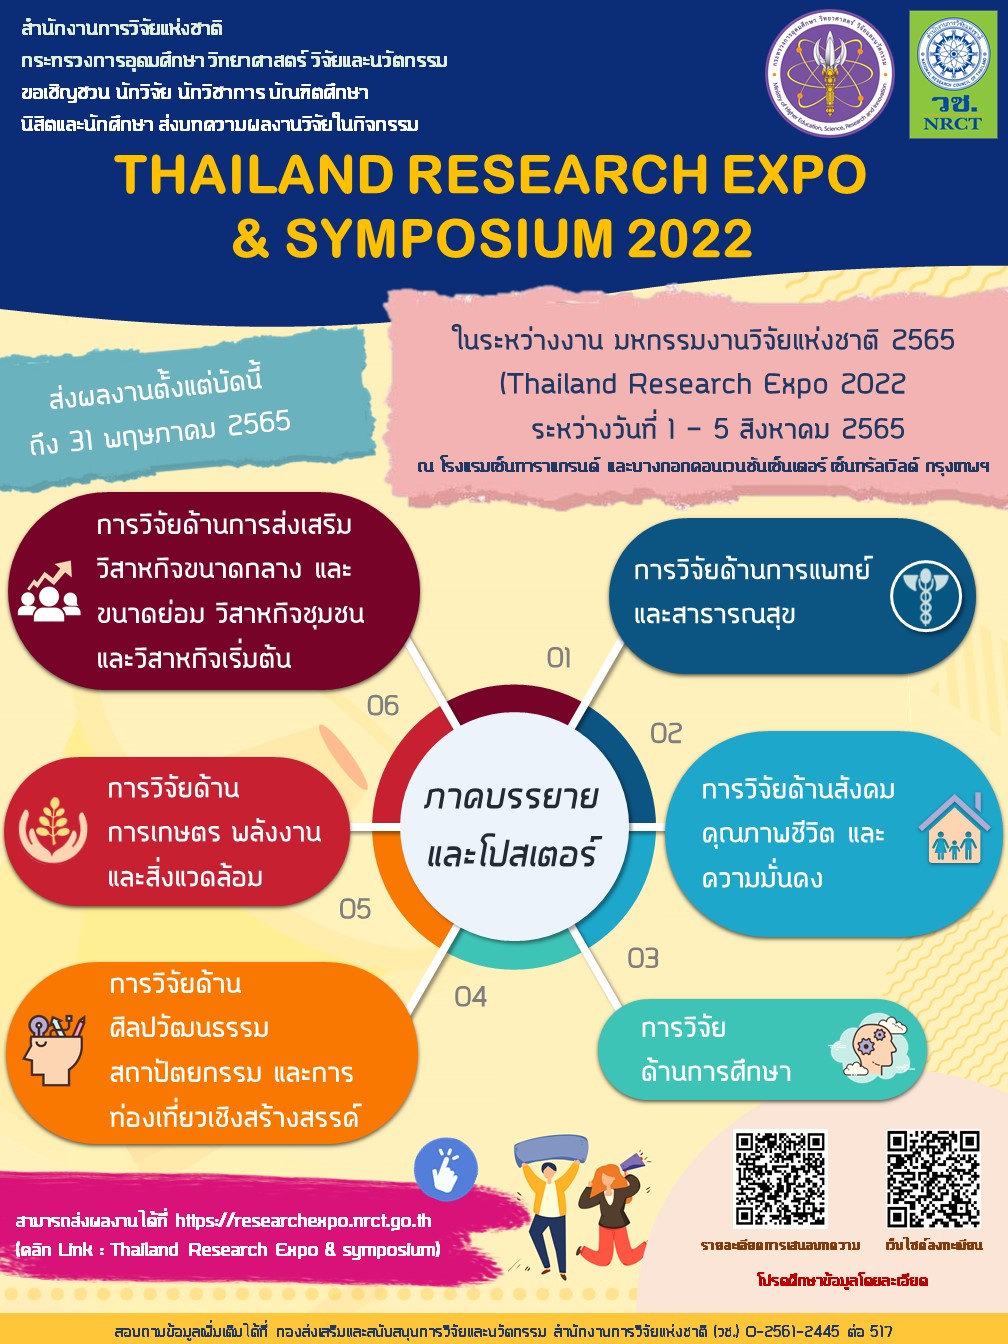 ขอเชิญชวนนักวิจัย นักวิชาการและบัณฑิตศึกษา ส่งบทความผลงานวิจัยเข้าร่วมนำเสนอในกิจกรรม Thailand Research Expo and Symposium 2022